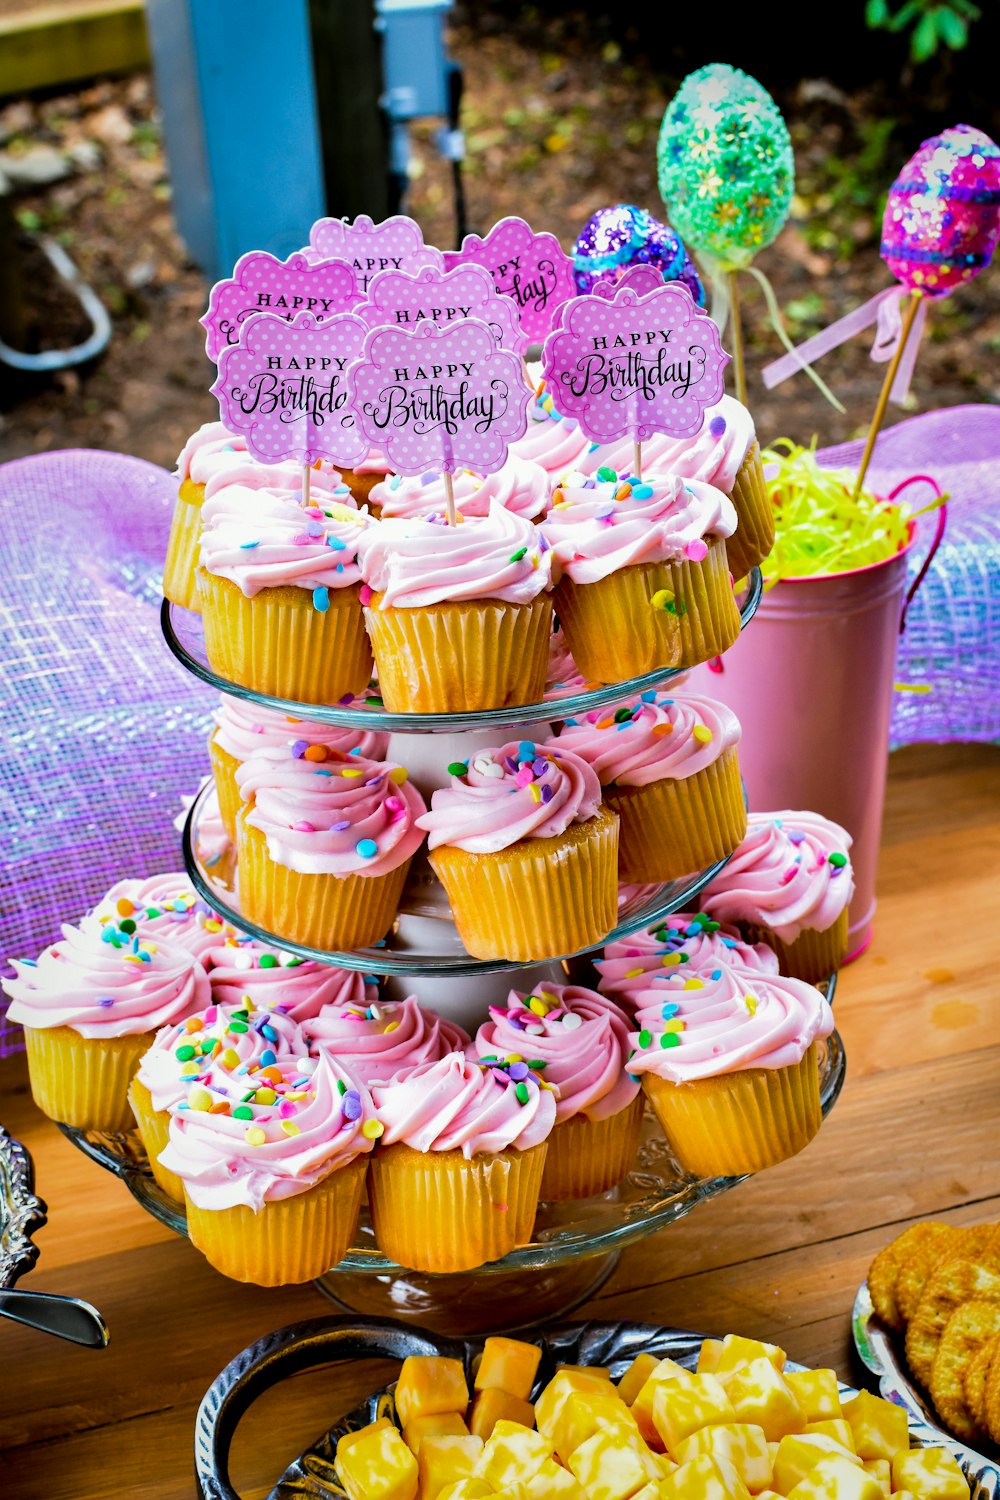 Une table surmontée de beaucoup de cupcakes recouverts de glaçage rose